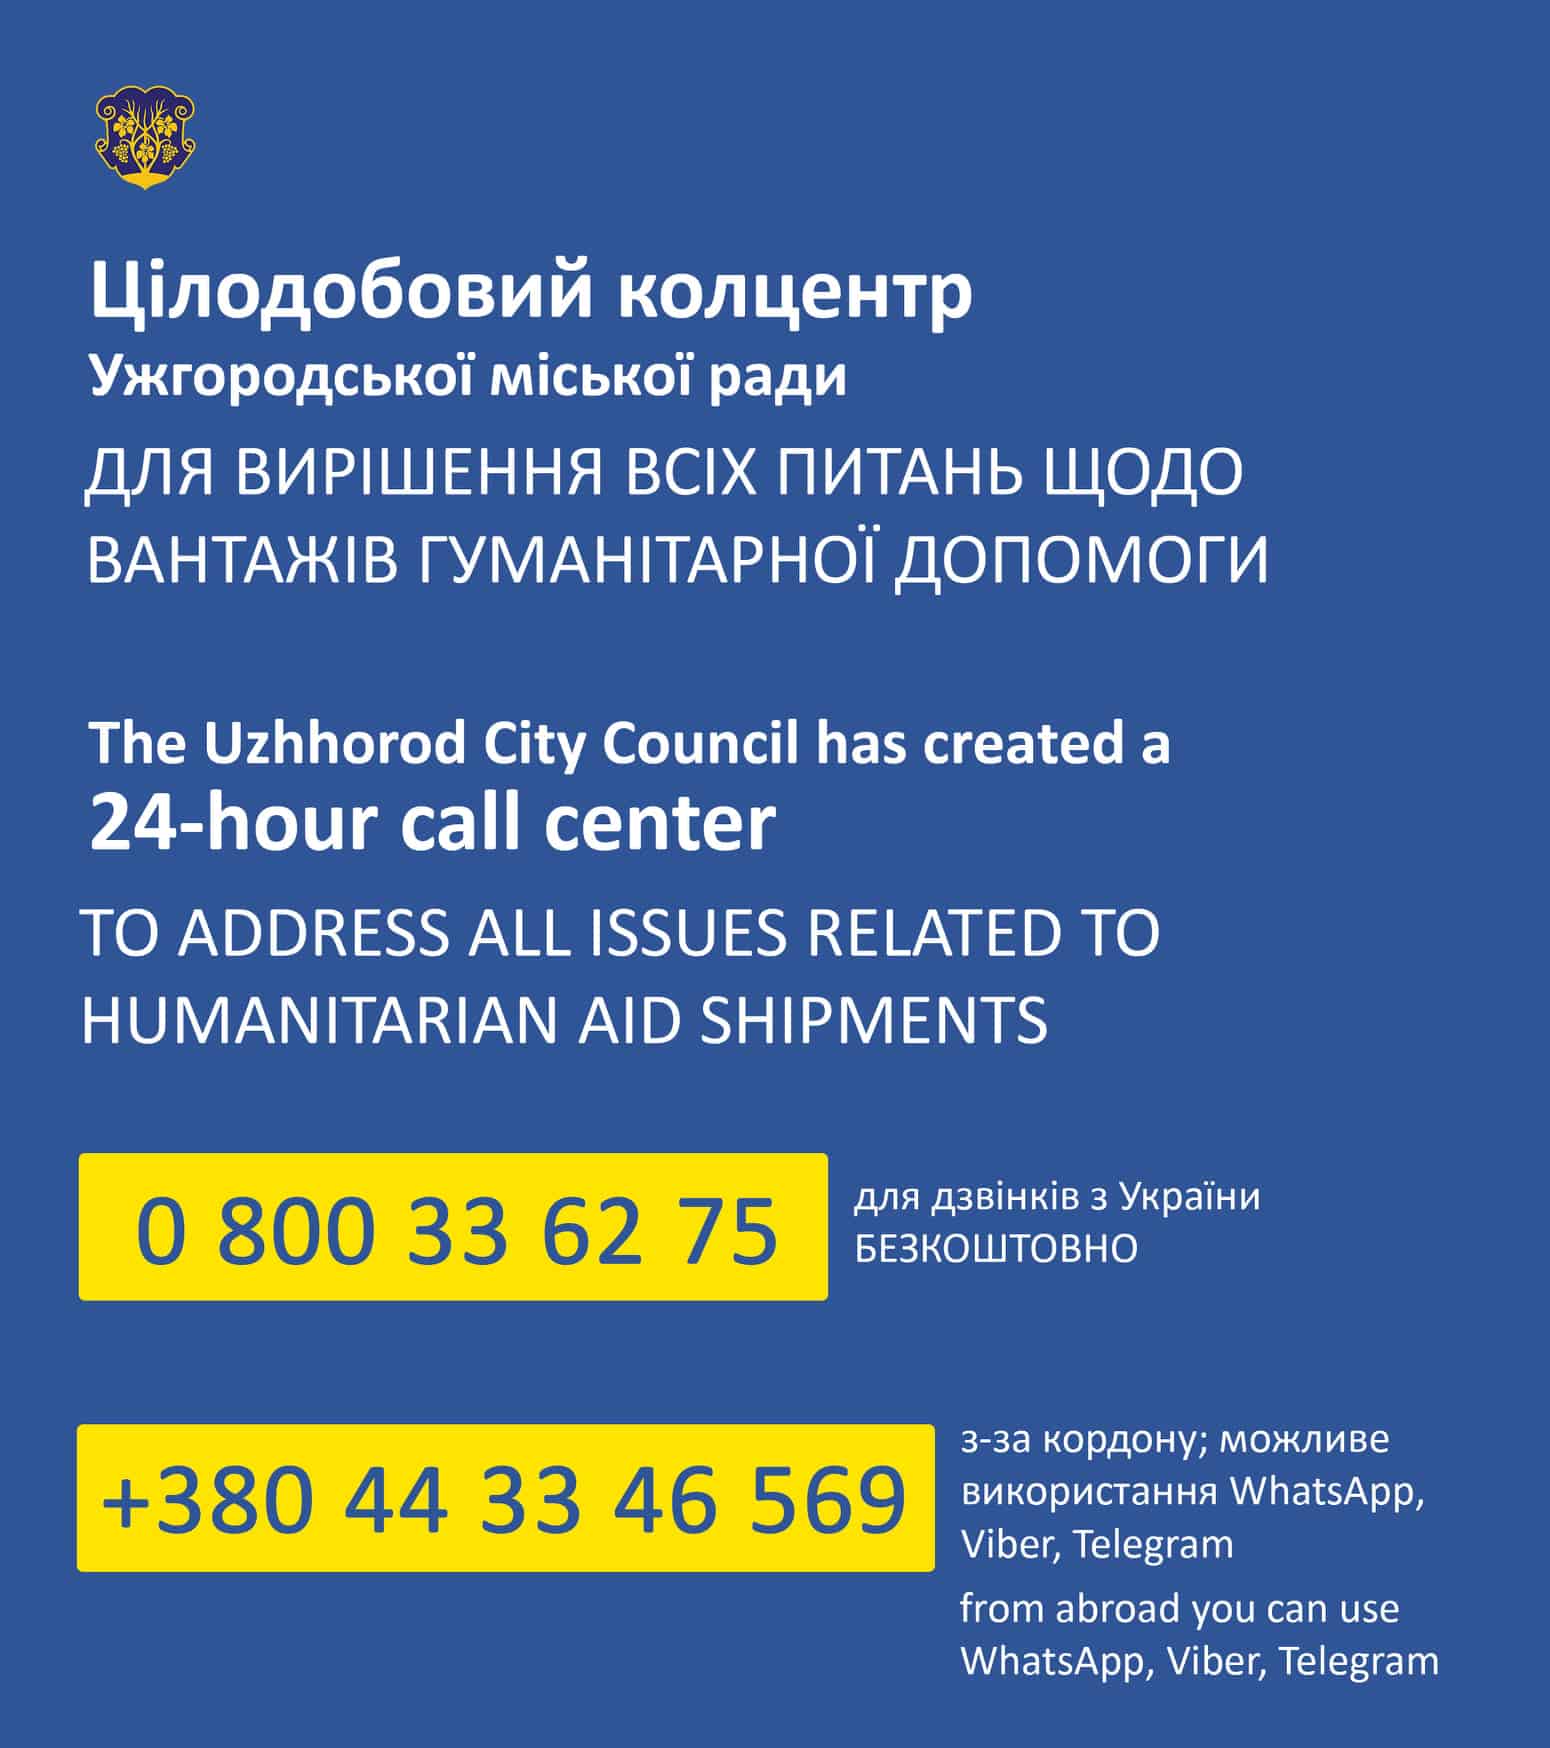 Цілодобовий колцентр Ужгородської міськради координує всі питання з доставки вантажів гуманітарної допомоги  